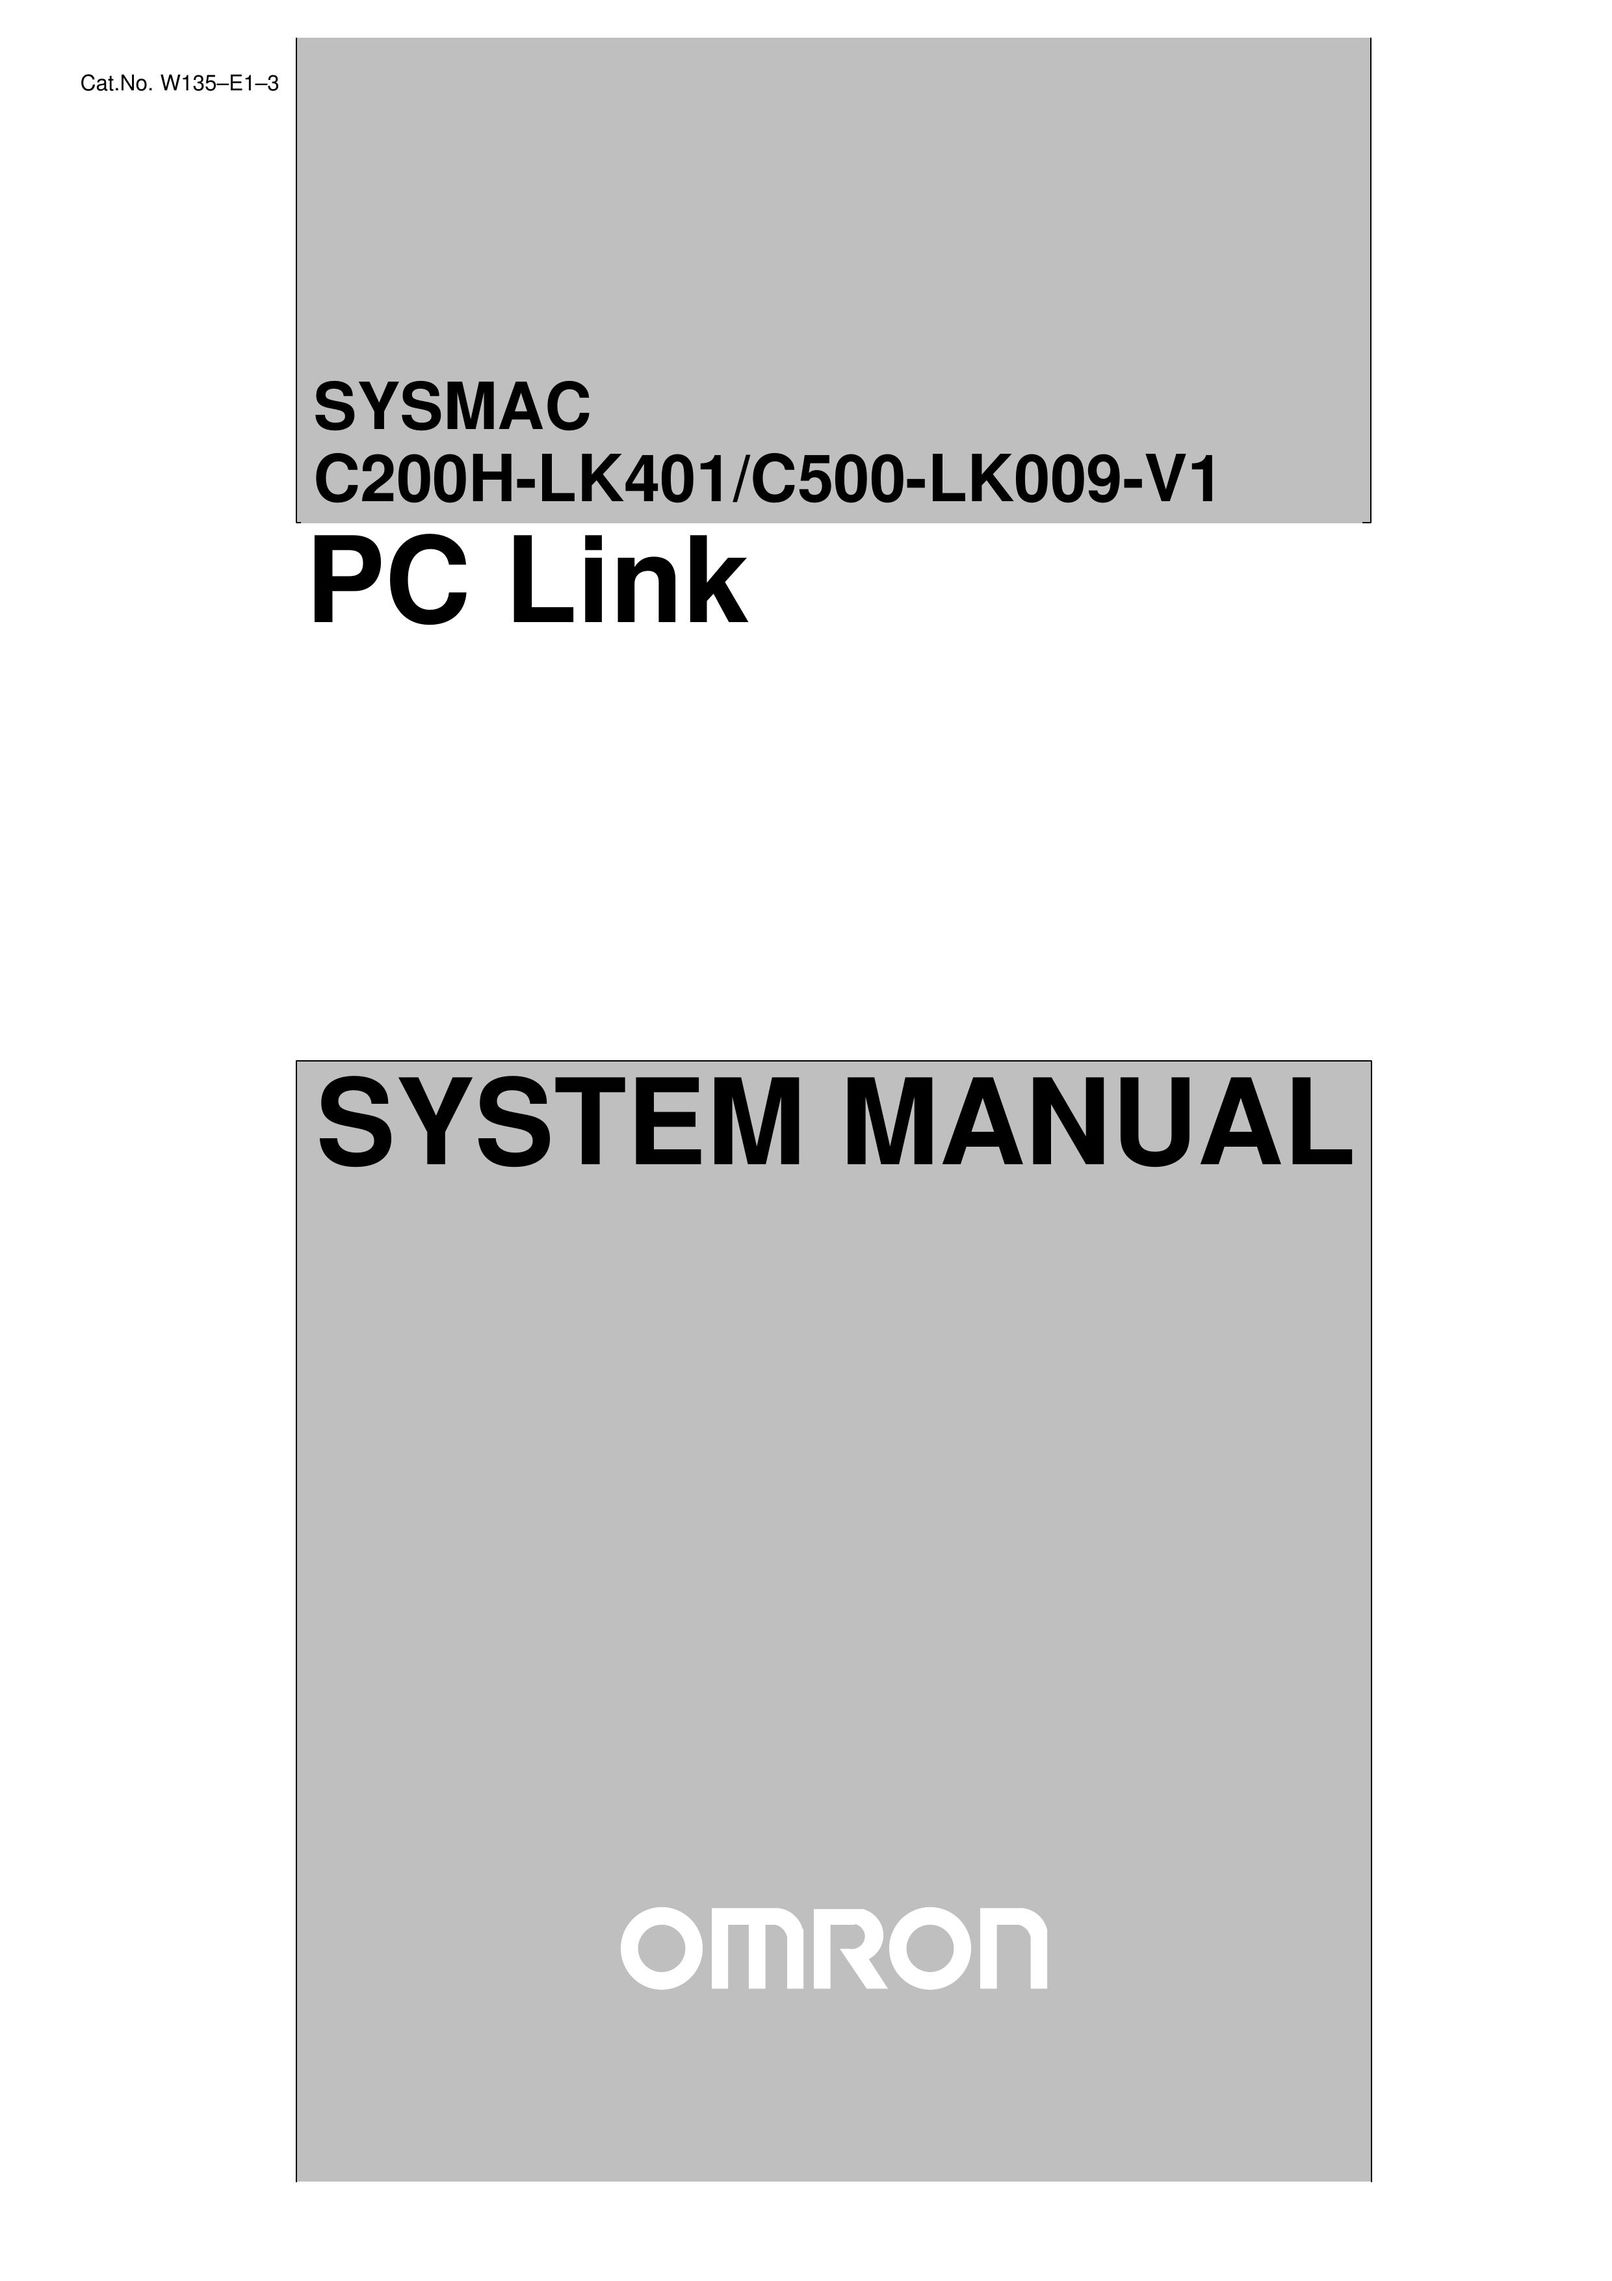 Omron C200H-LK401 Network Card User Manual